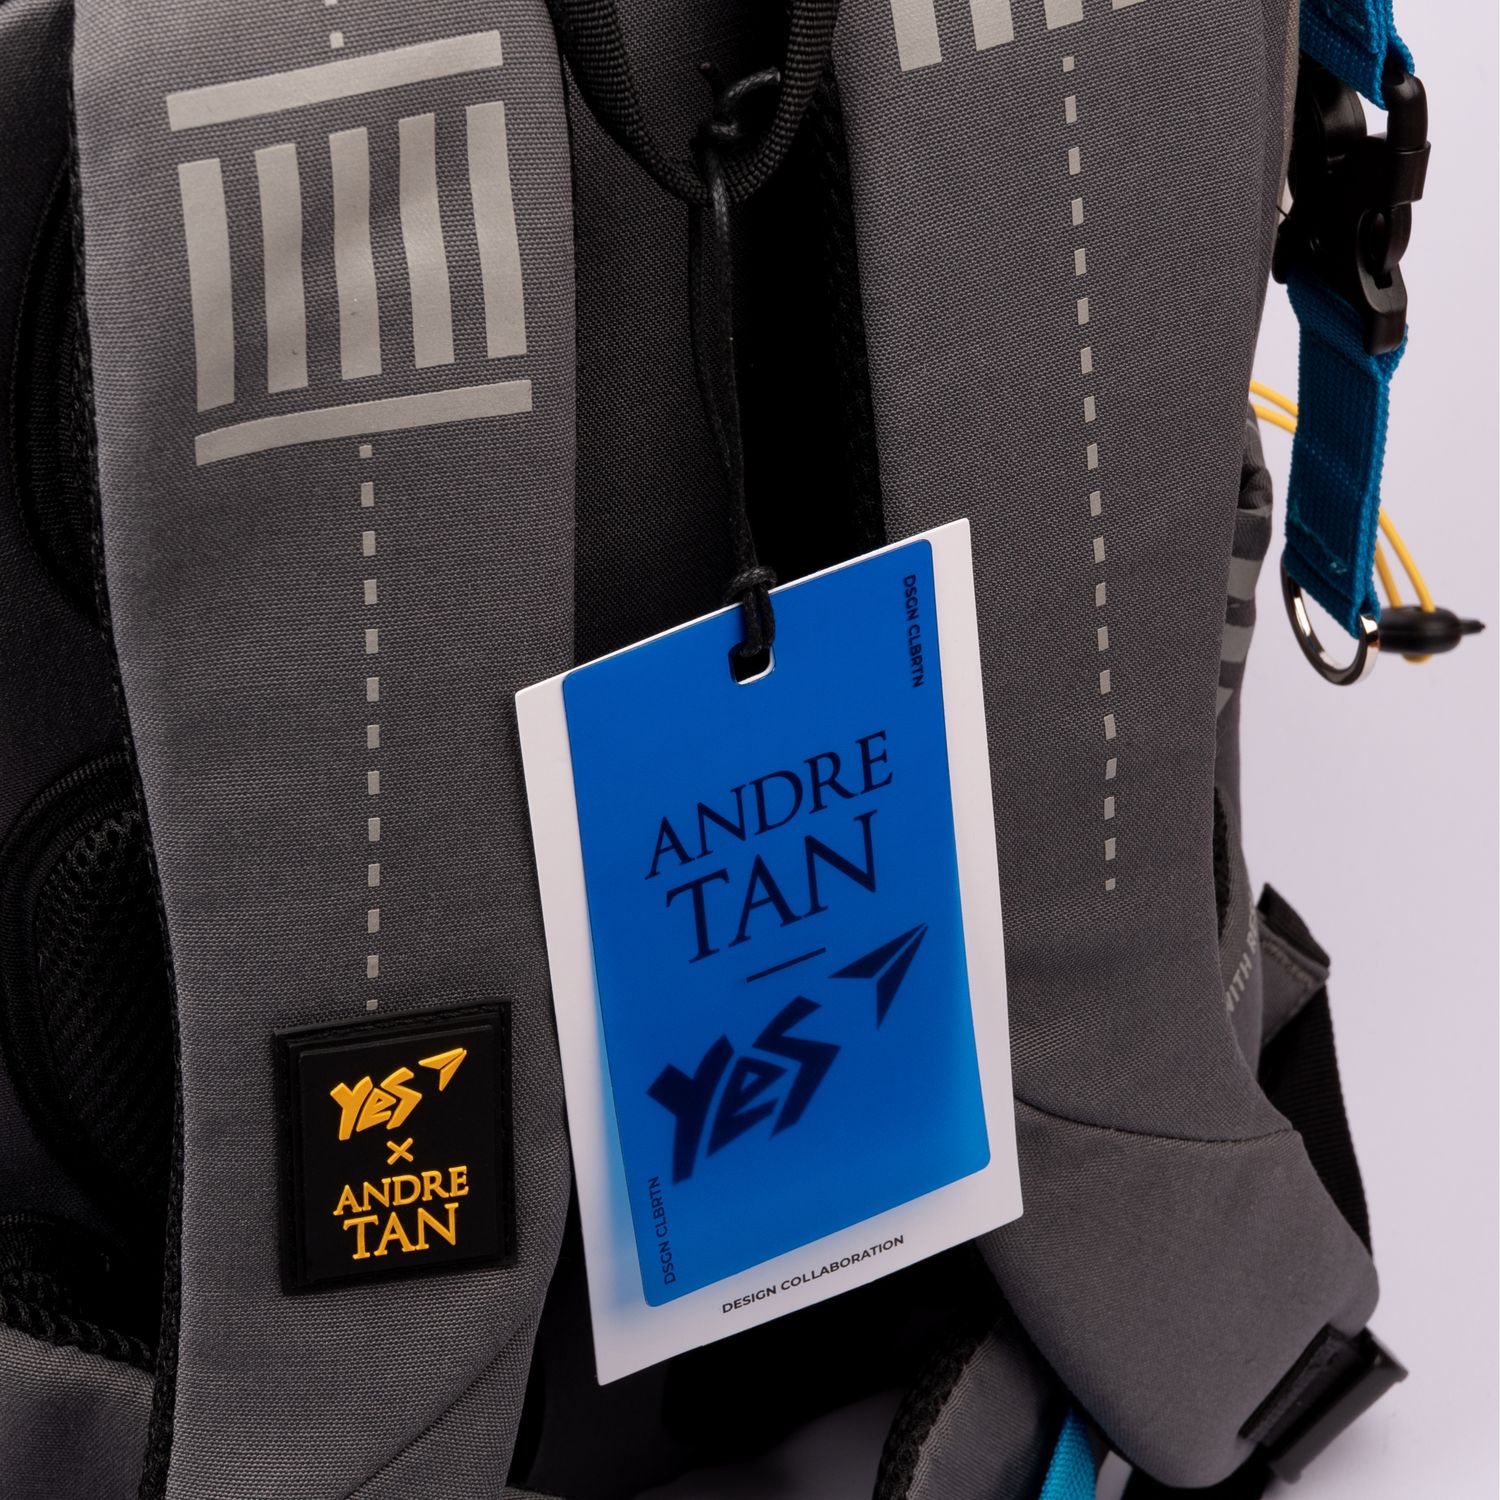 Рюкзак Yes TS-94-1 Andre Tan, серый с черным (559039) - фото 15